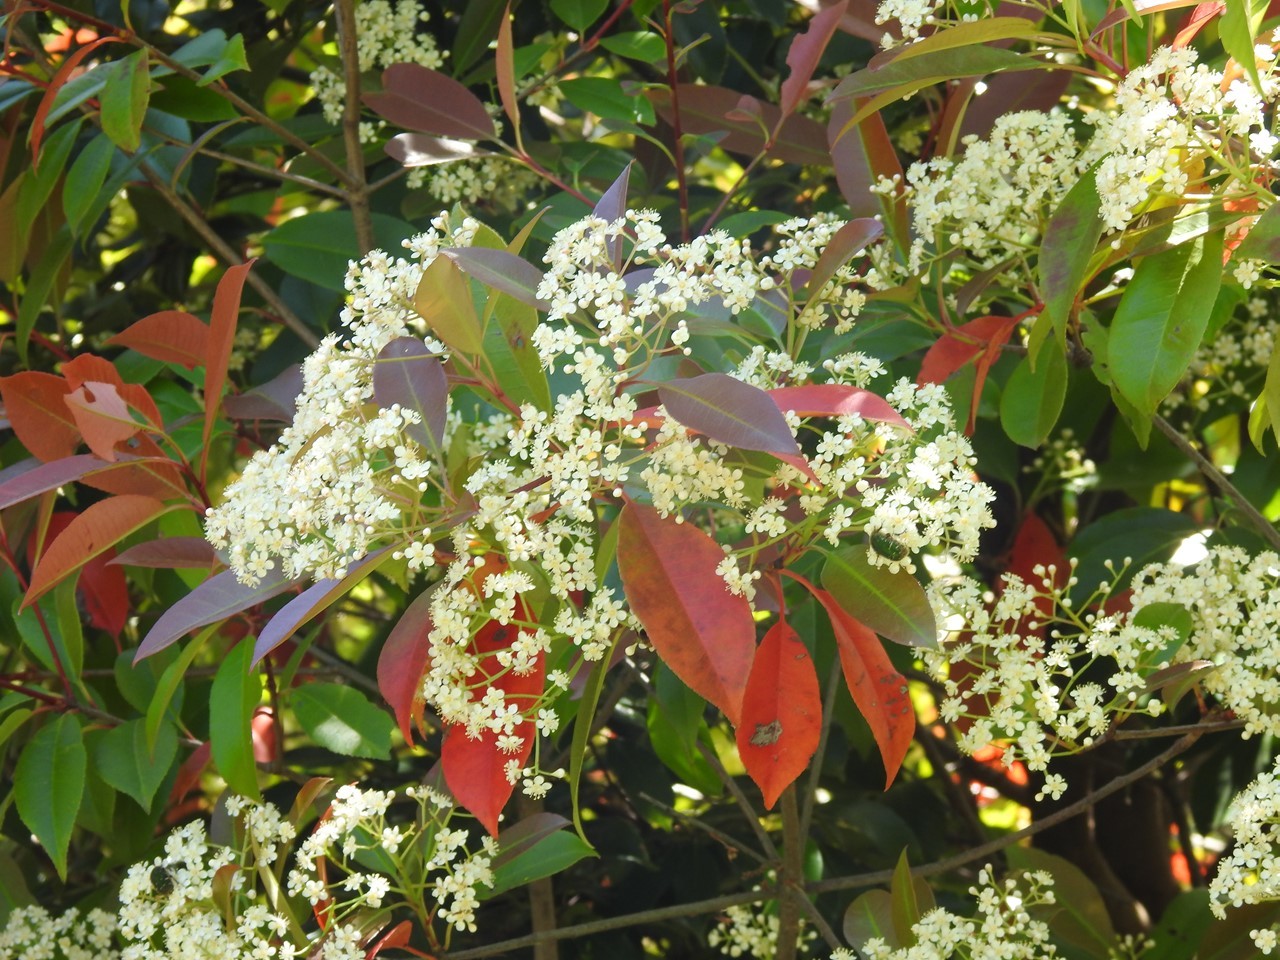 紅要黐 ベニカナメモチ や空木 ウツギ 等花の咲く木曽川水園風景 自然風の自然風だより